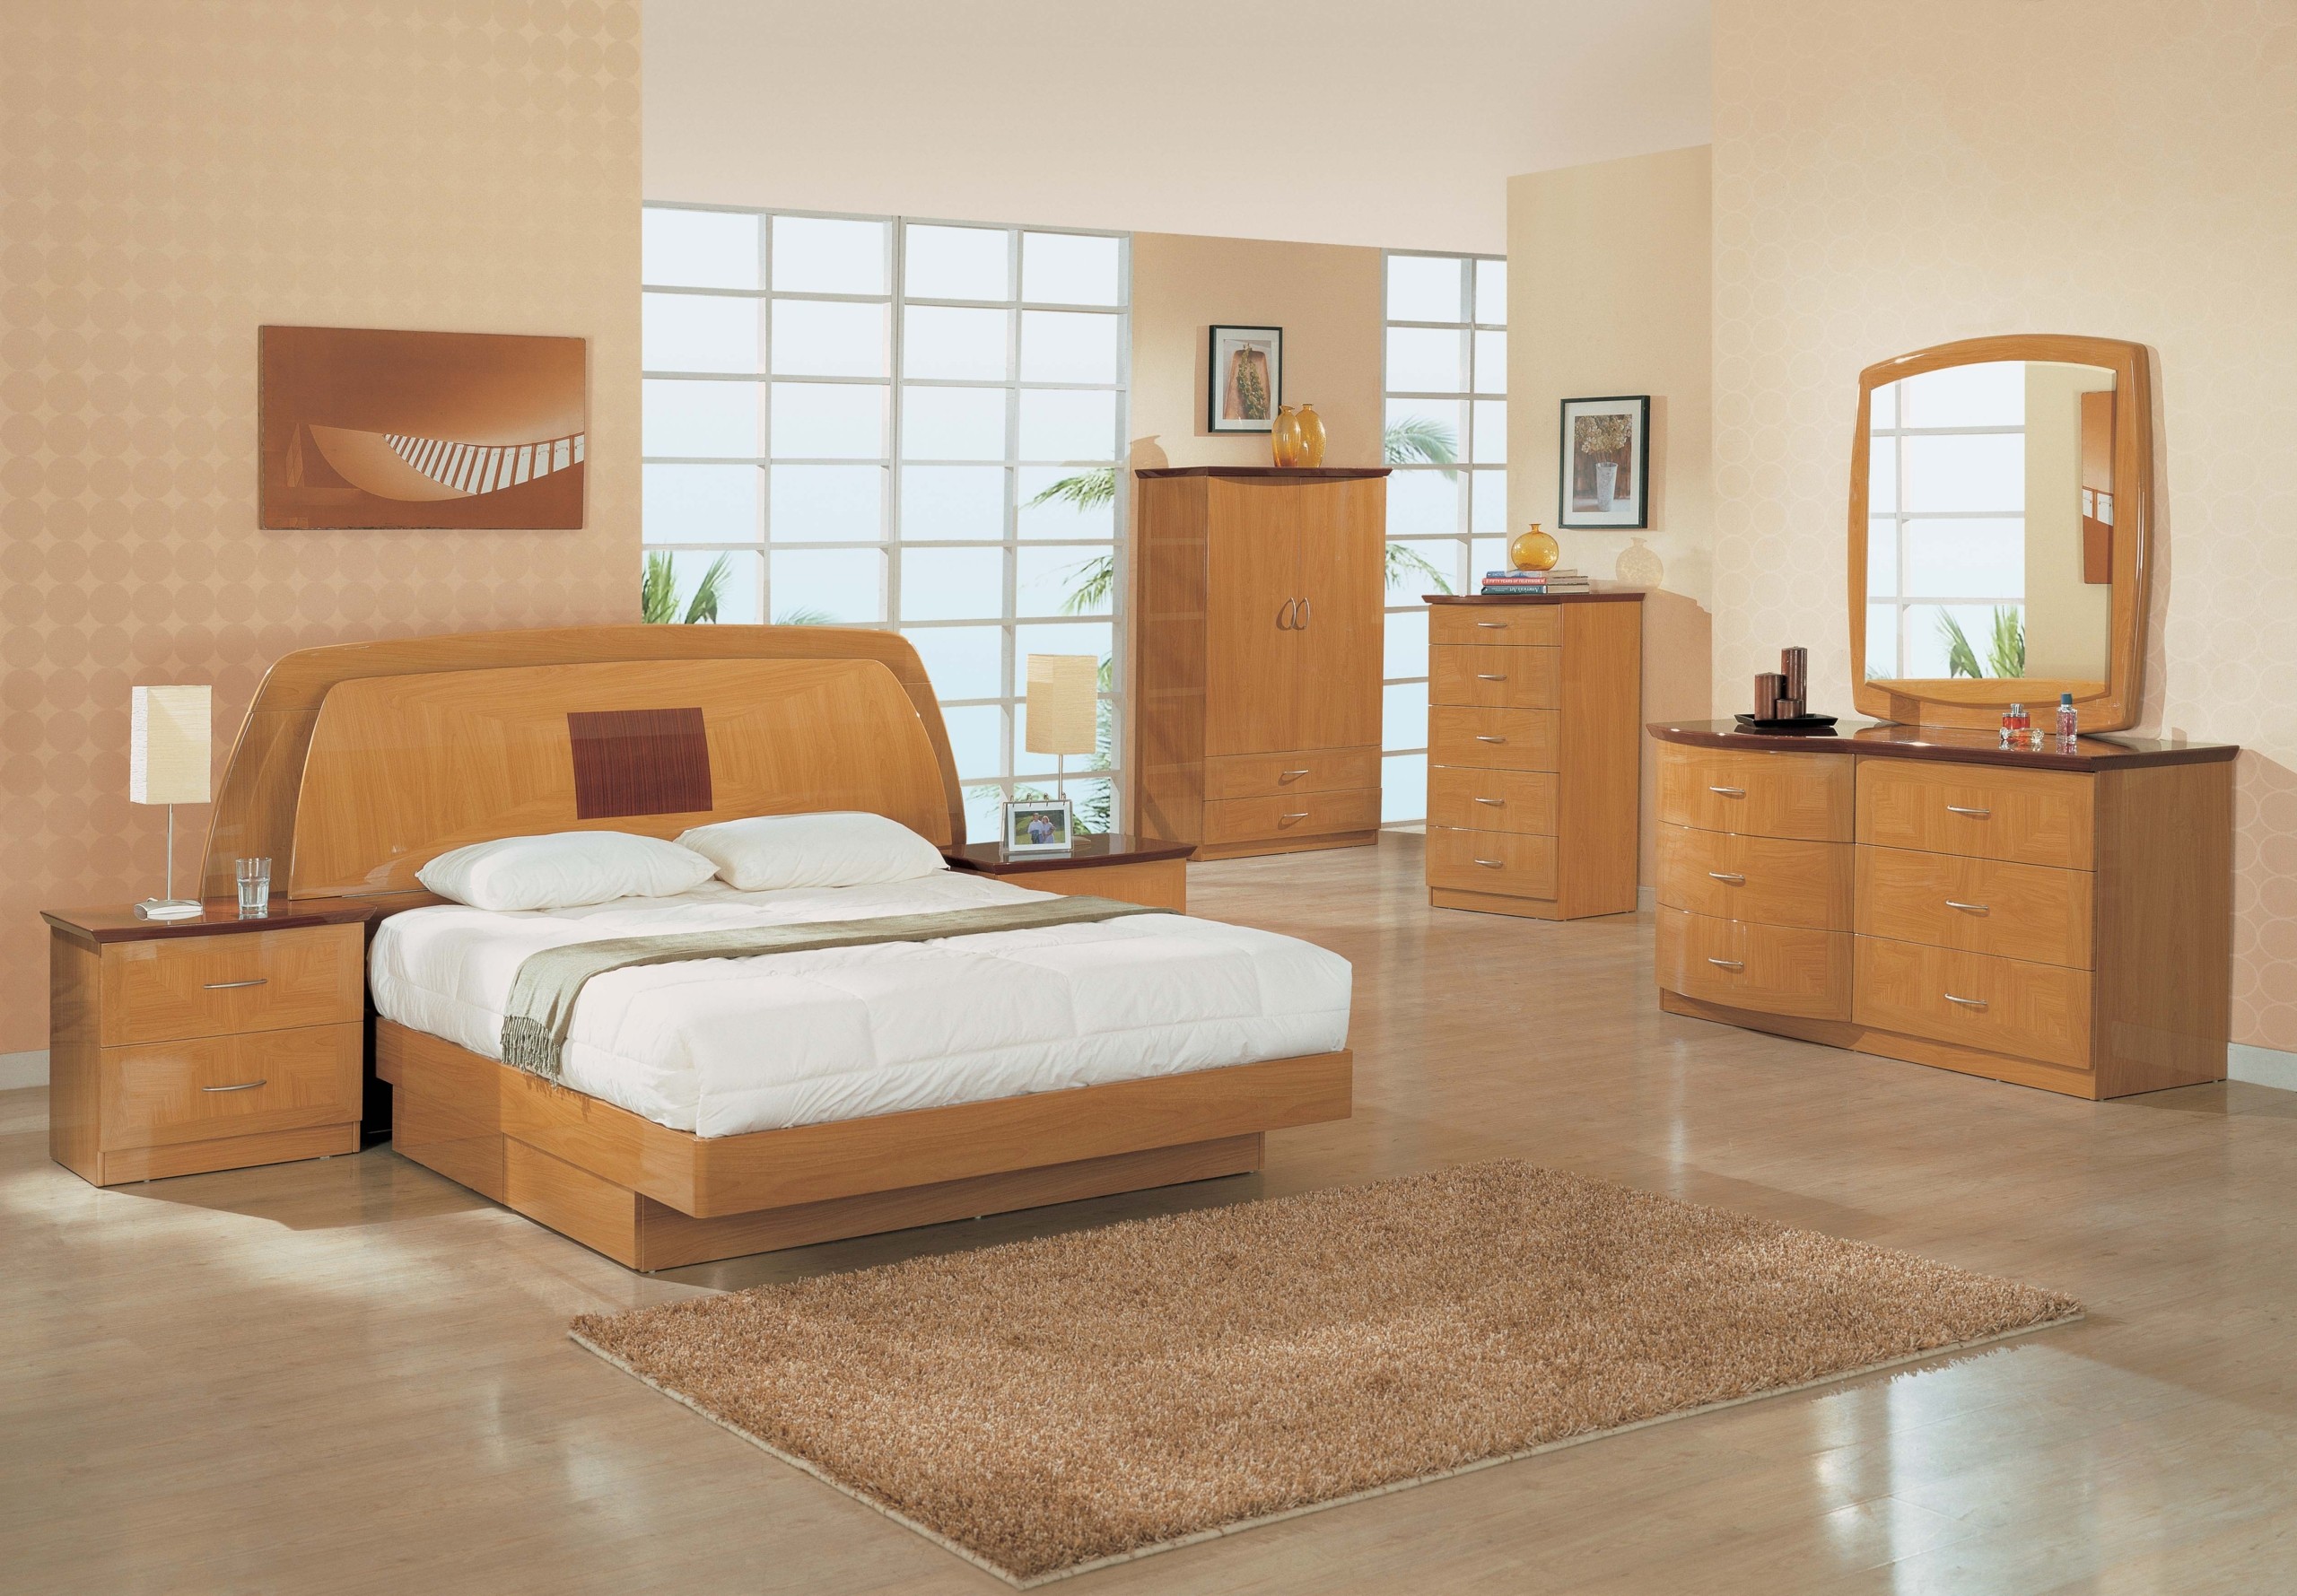 Oak bedroom furniture sets